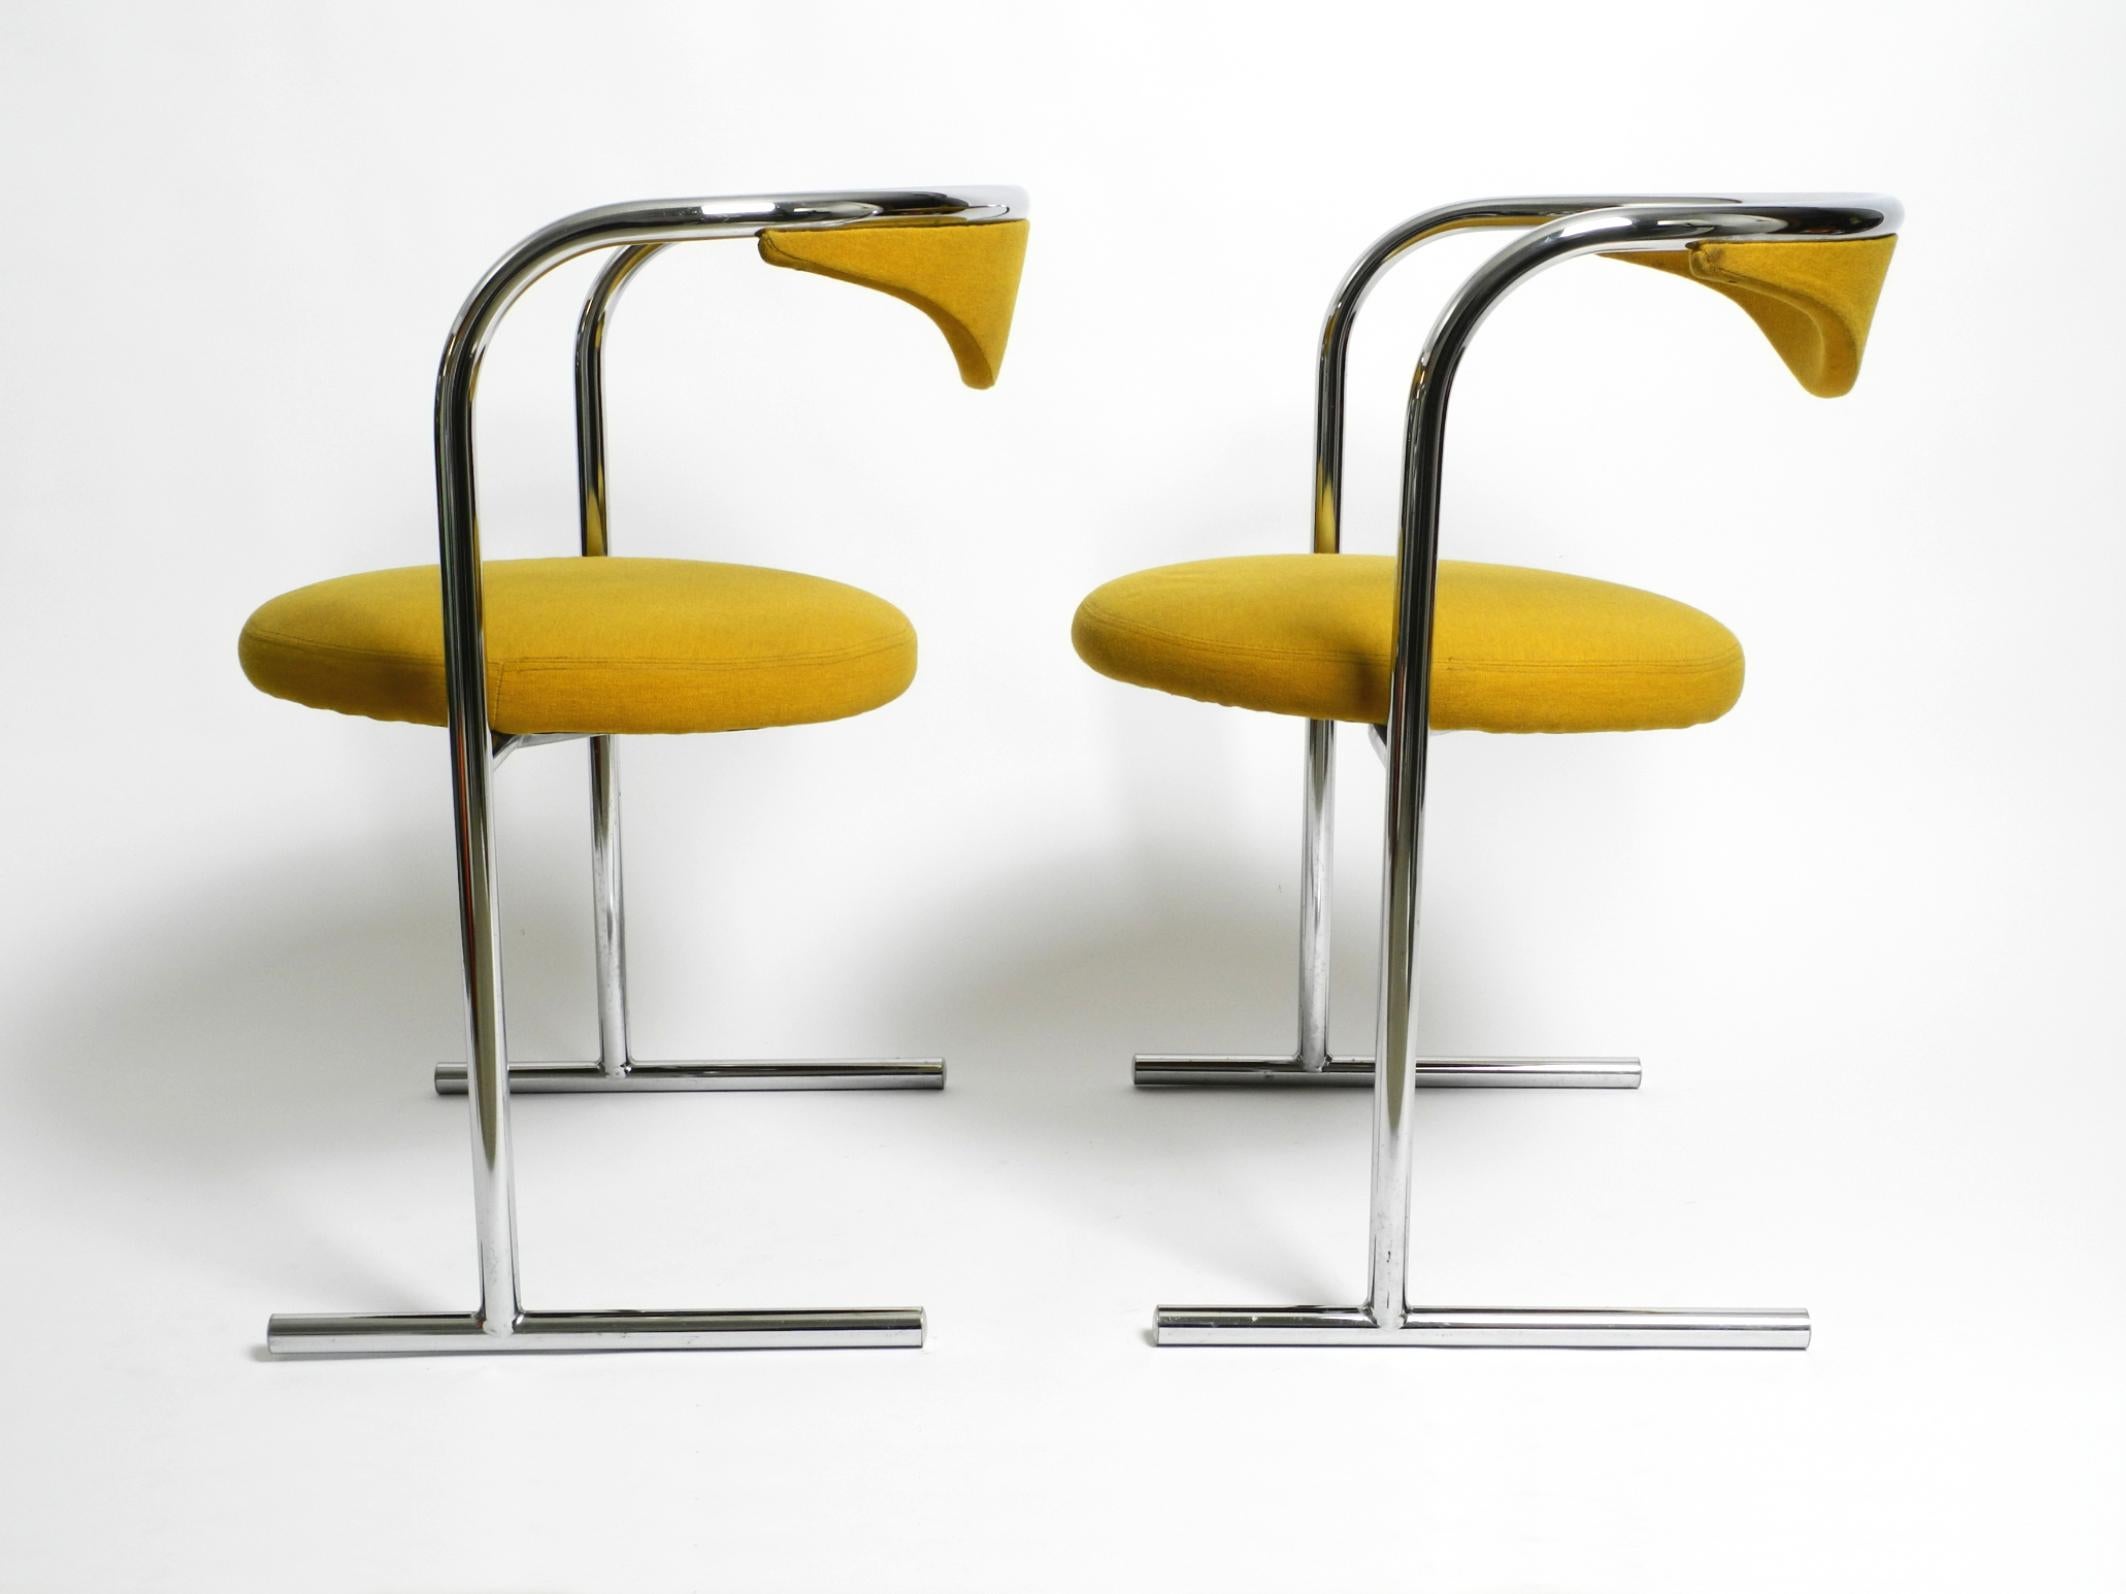 Deux chaises originales des années 1970 en acier tubulaire rembourrées par Hanno von Gustedt pour Thonet, modèle S30.
Un design de l'âge de l'espace de grande qualité. Fabriqué en Allemagne.
Lauréat du prix IF Design en 1974.
La structure est en